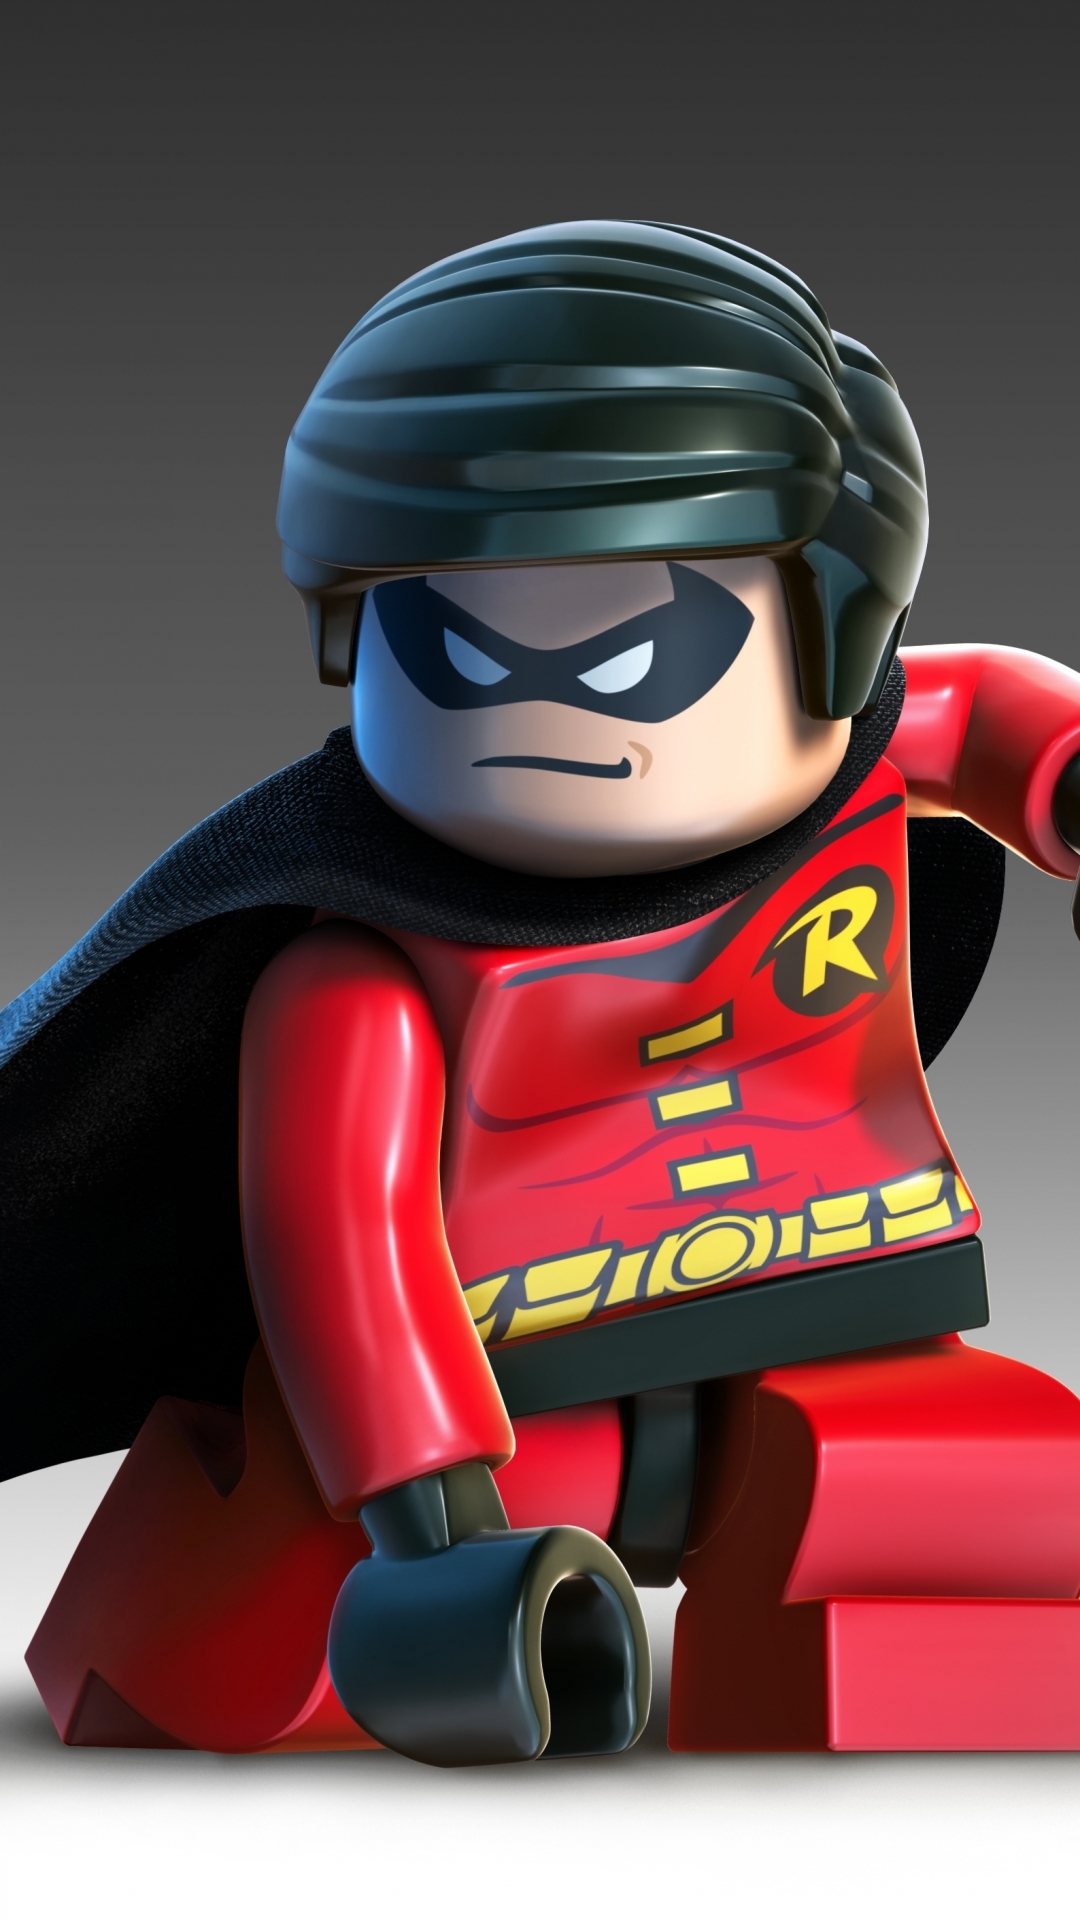 Robin Lego Batman 2 - HD Wallpaper 